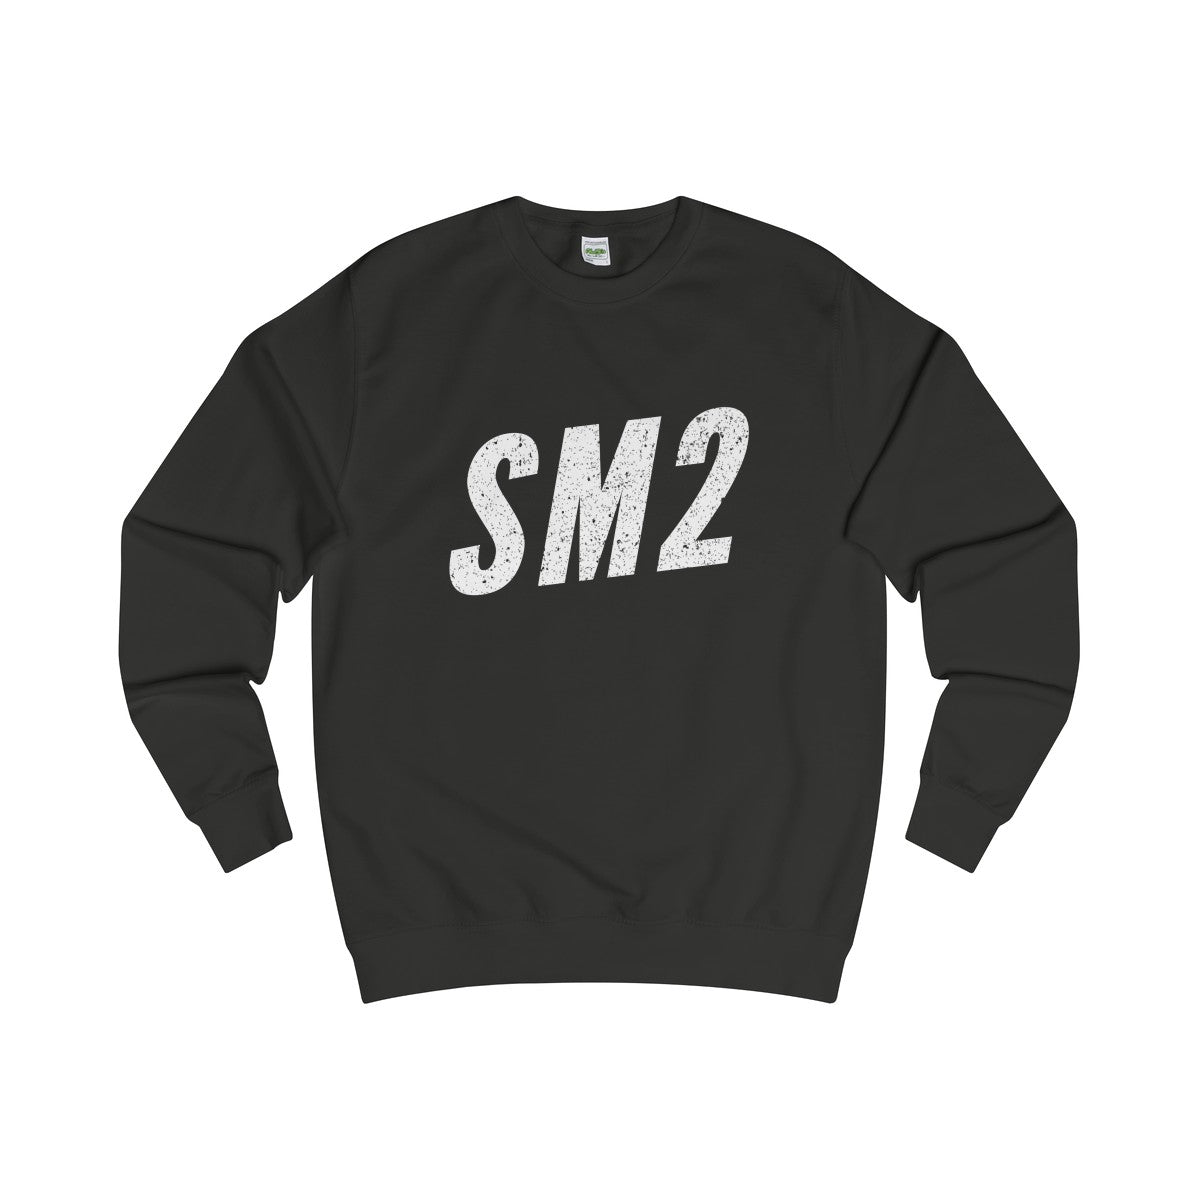 Sutton SM2 Sweater